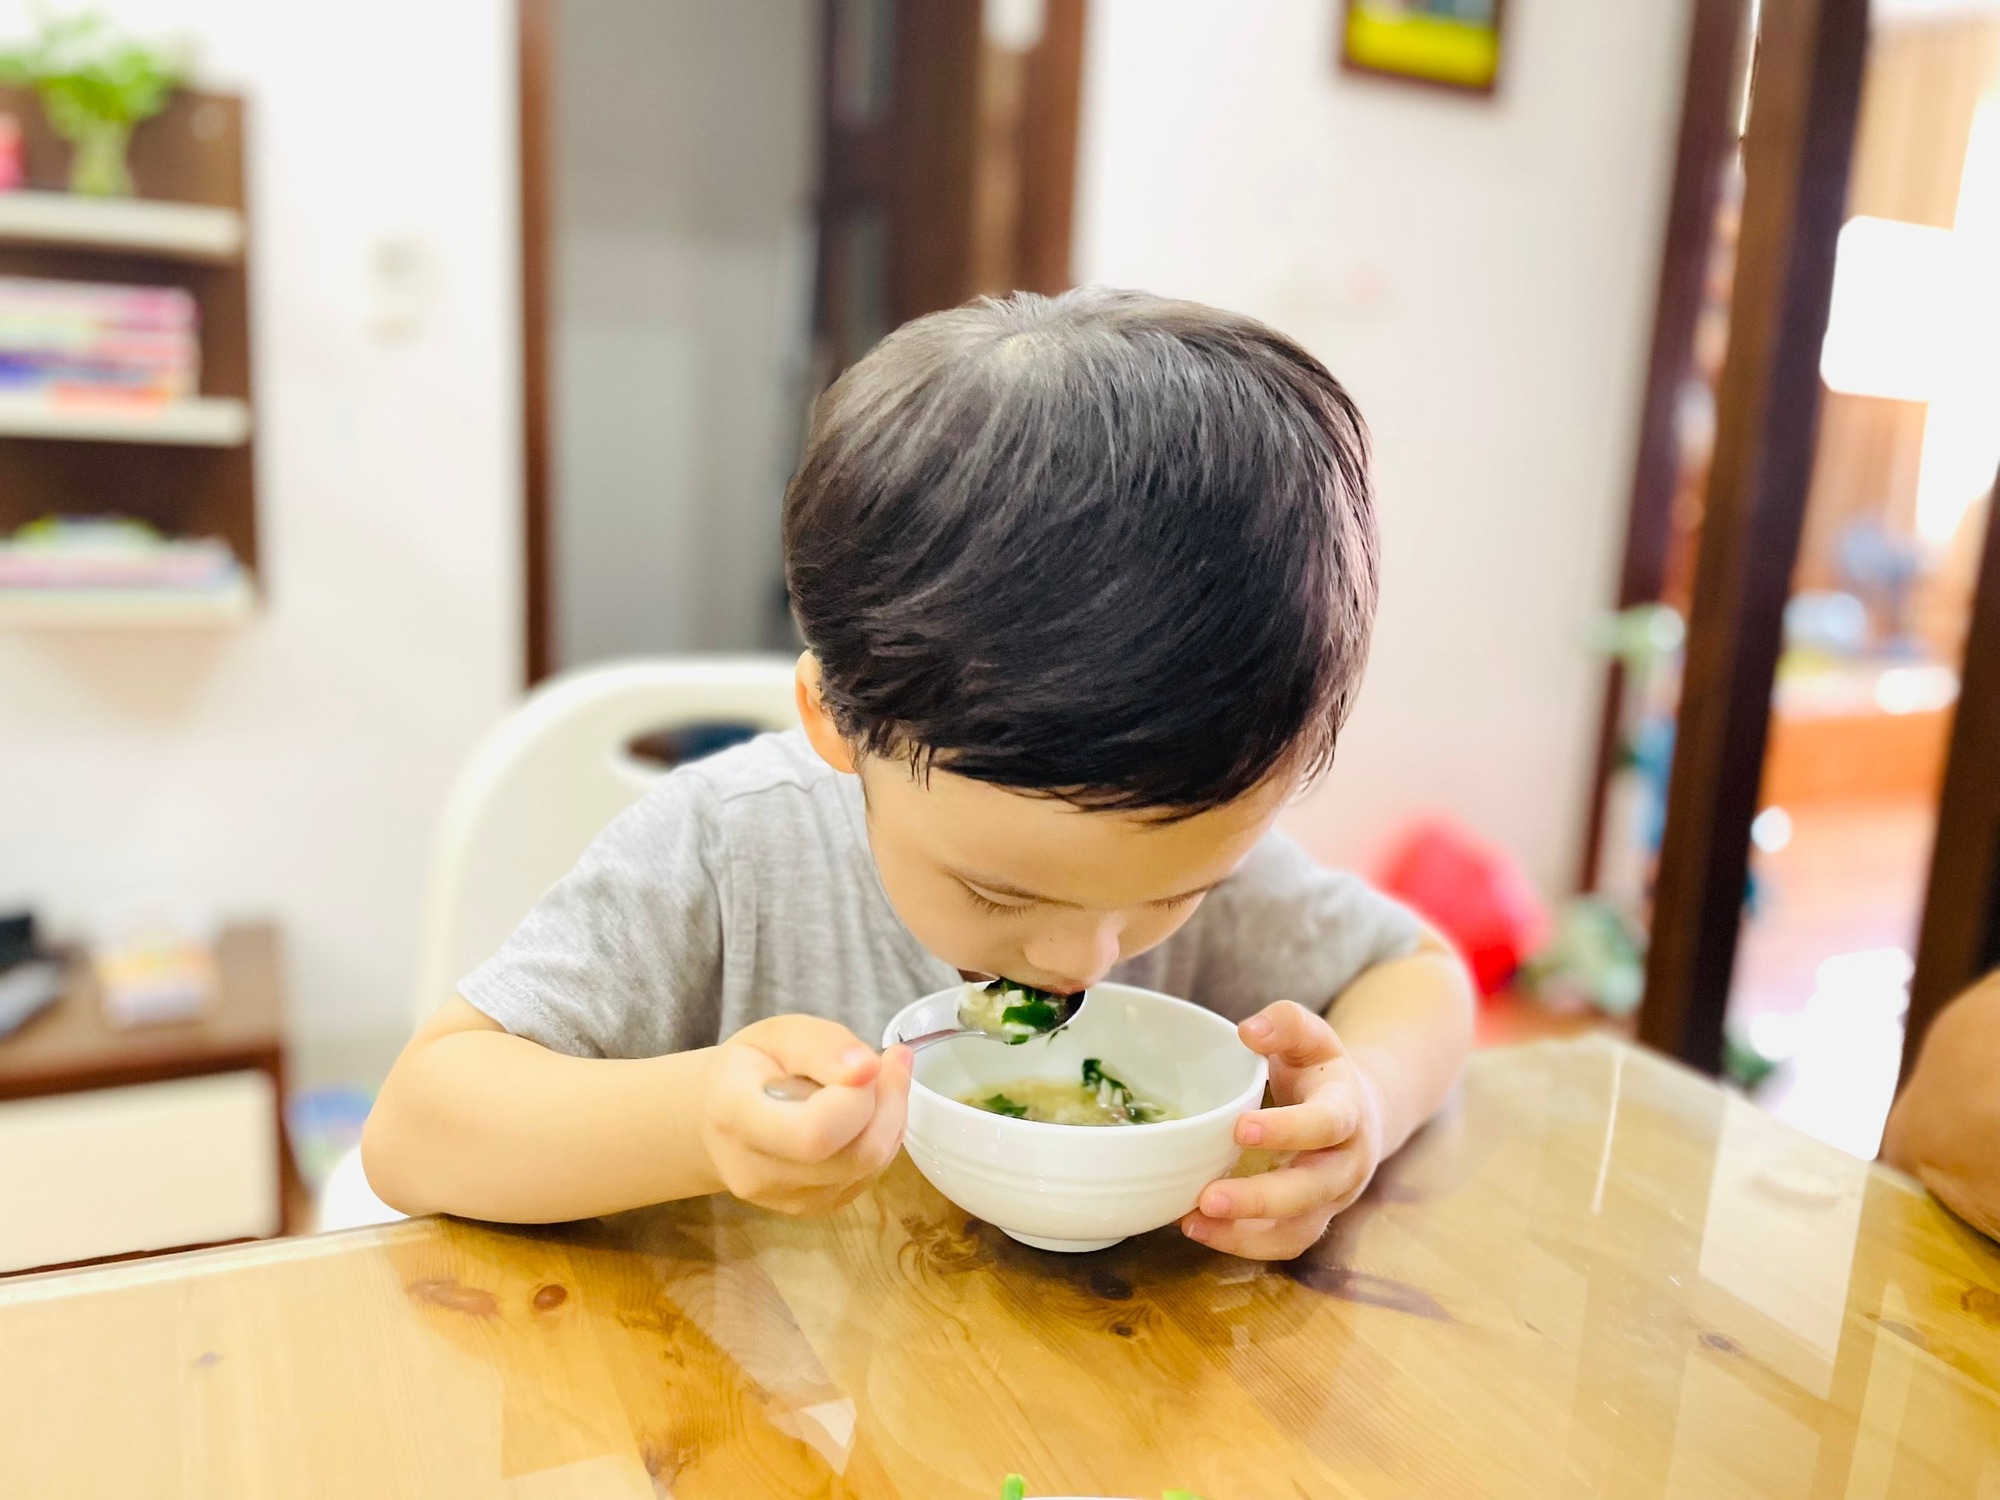 Chuyên gia chỉ cách bổ sung dinh dưỡng để tăng cường sức khỏe cho trẻ trong thời điểm xuất hiện nhiều dịch bệnh - Ảnh 3.